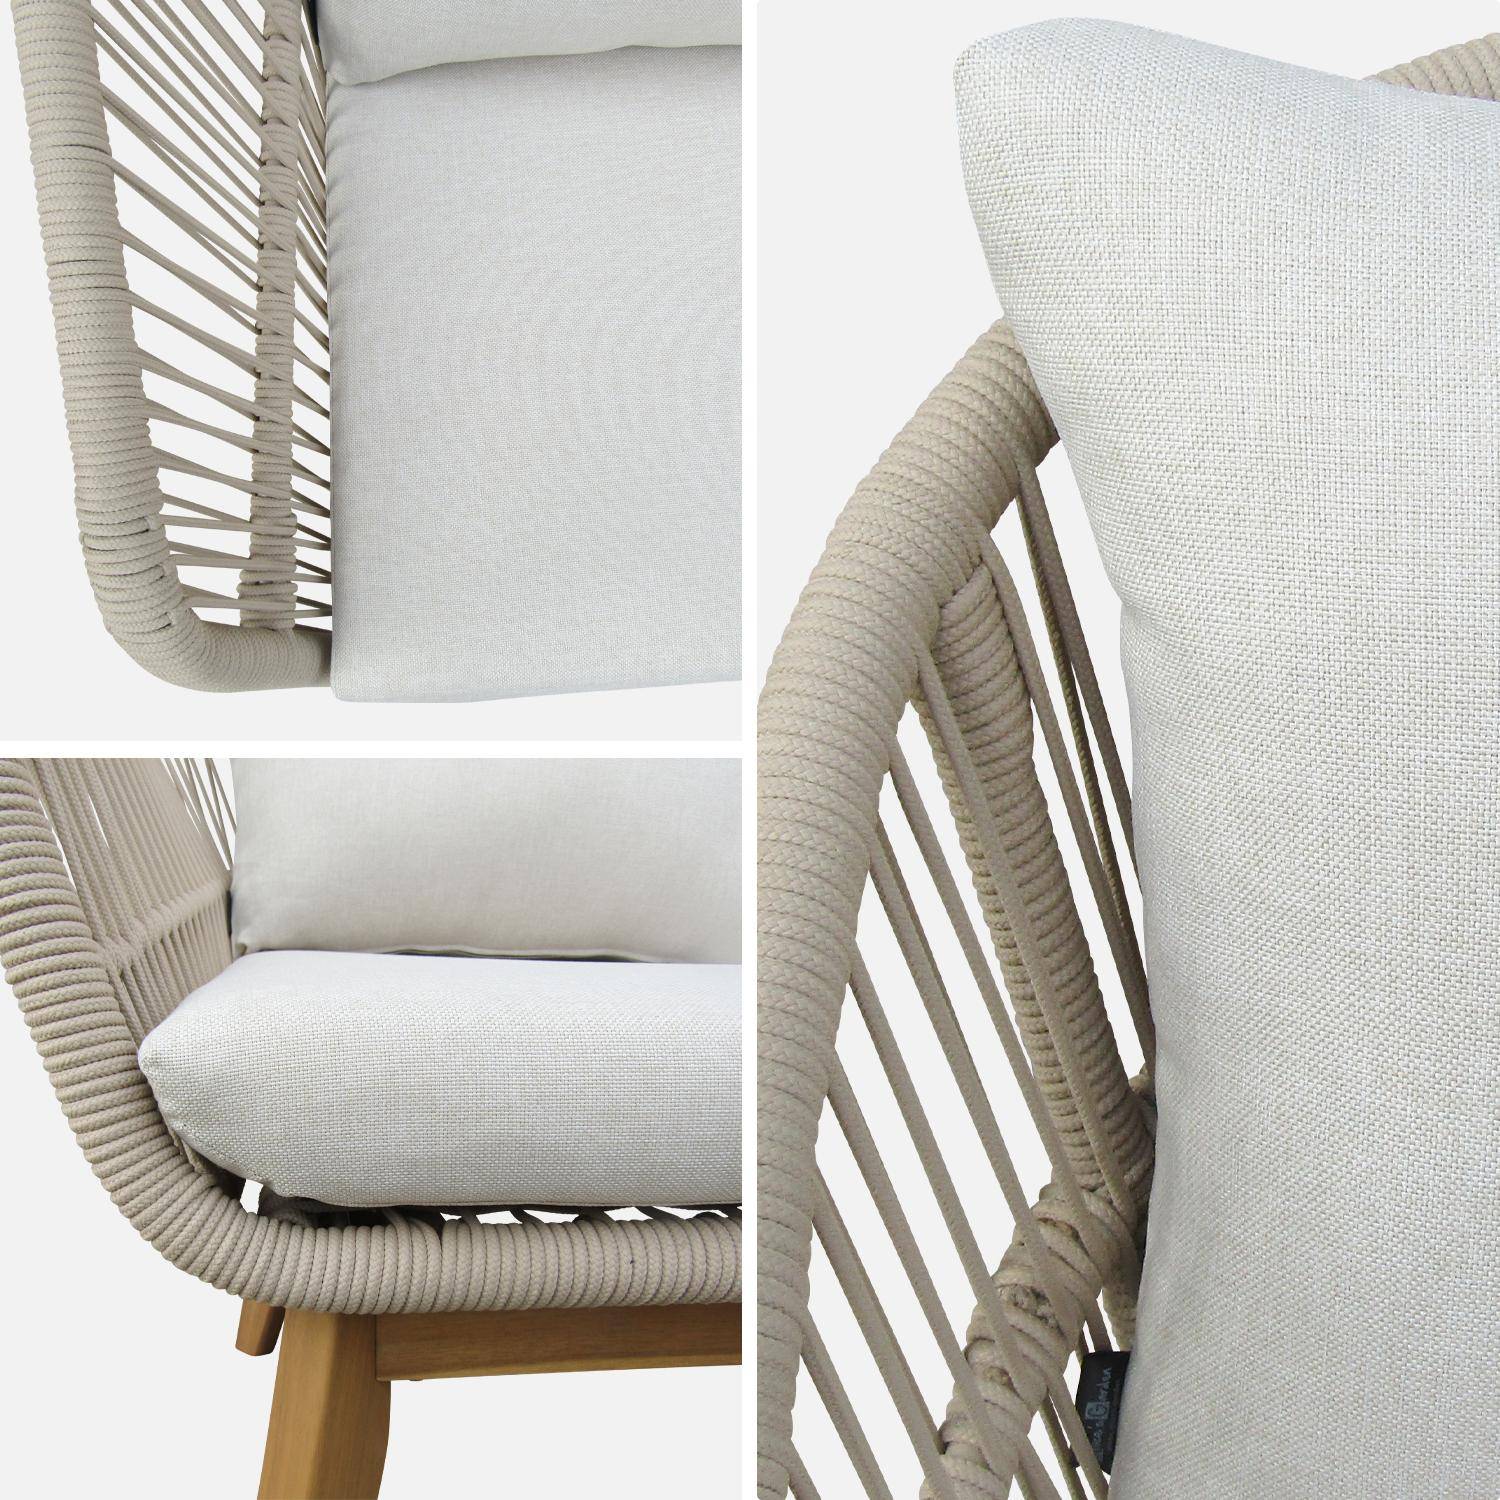 Gartengarnitur 4 Sitze - ROSARIO - aus geflochtenen Seilen, Holz und Aluminium, grau / beige Kissen Photo8